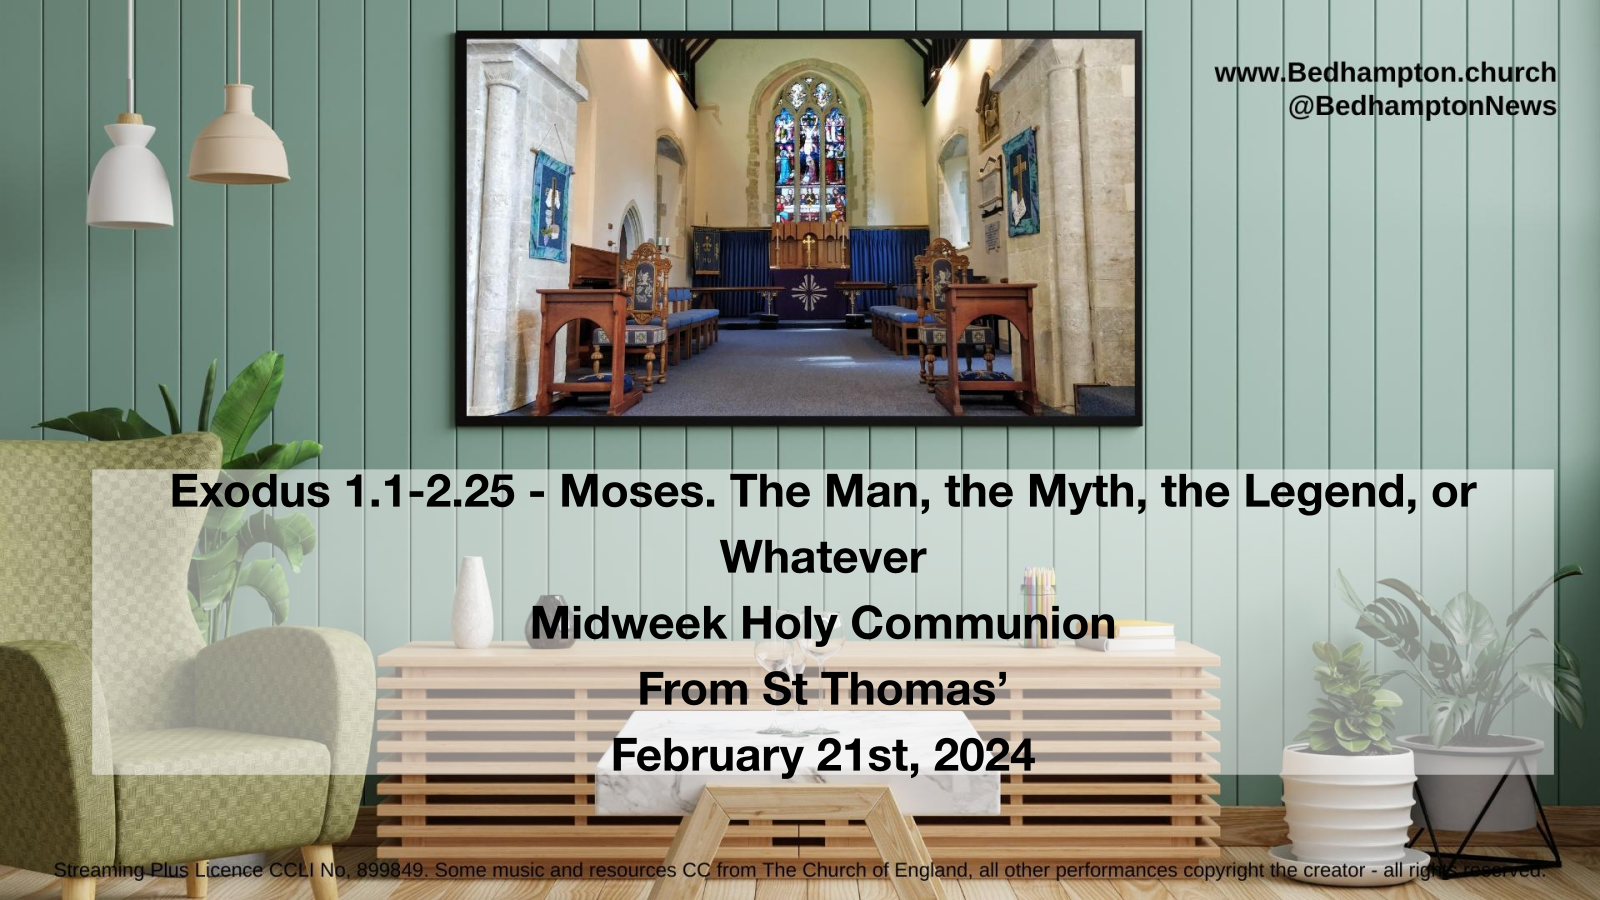 Midweek Holy Communion February 21st, 2024 – Exodus 1.1-2.25